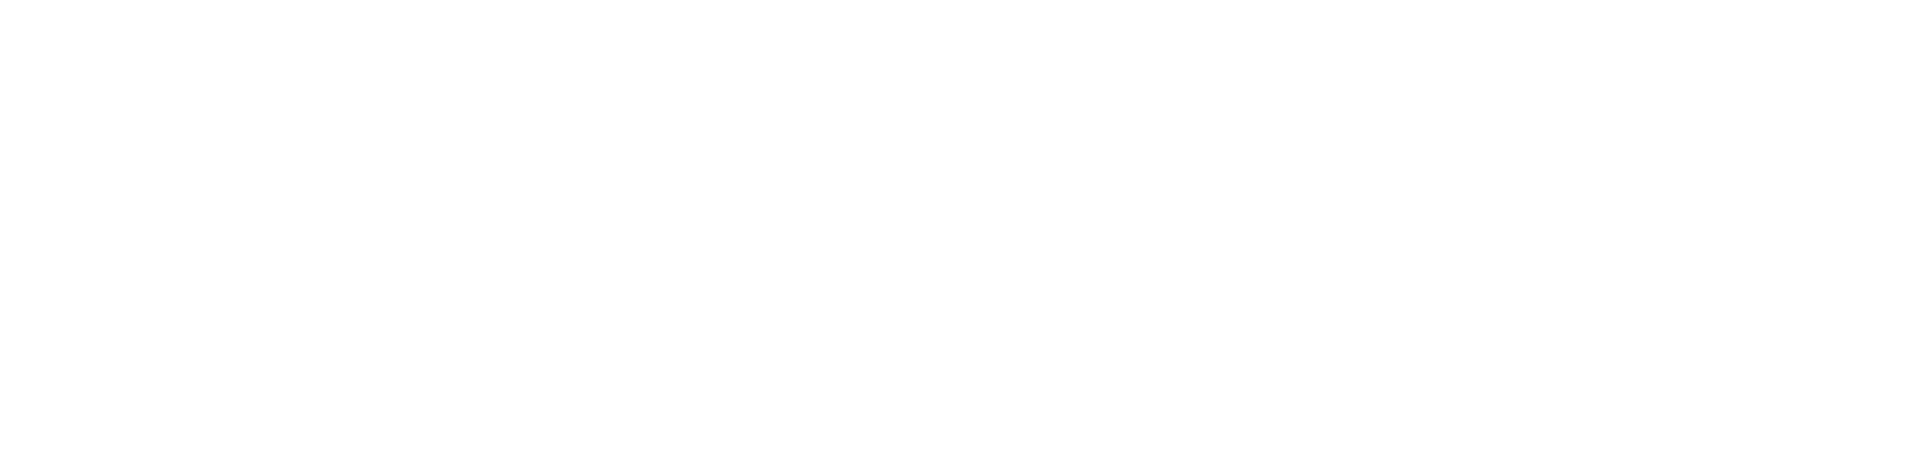 racing league